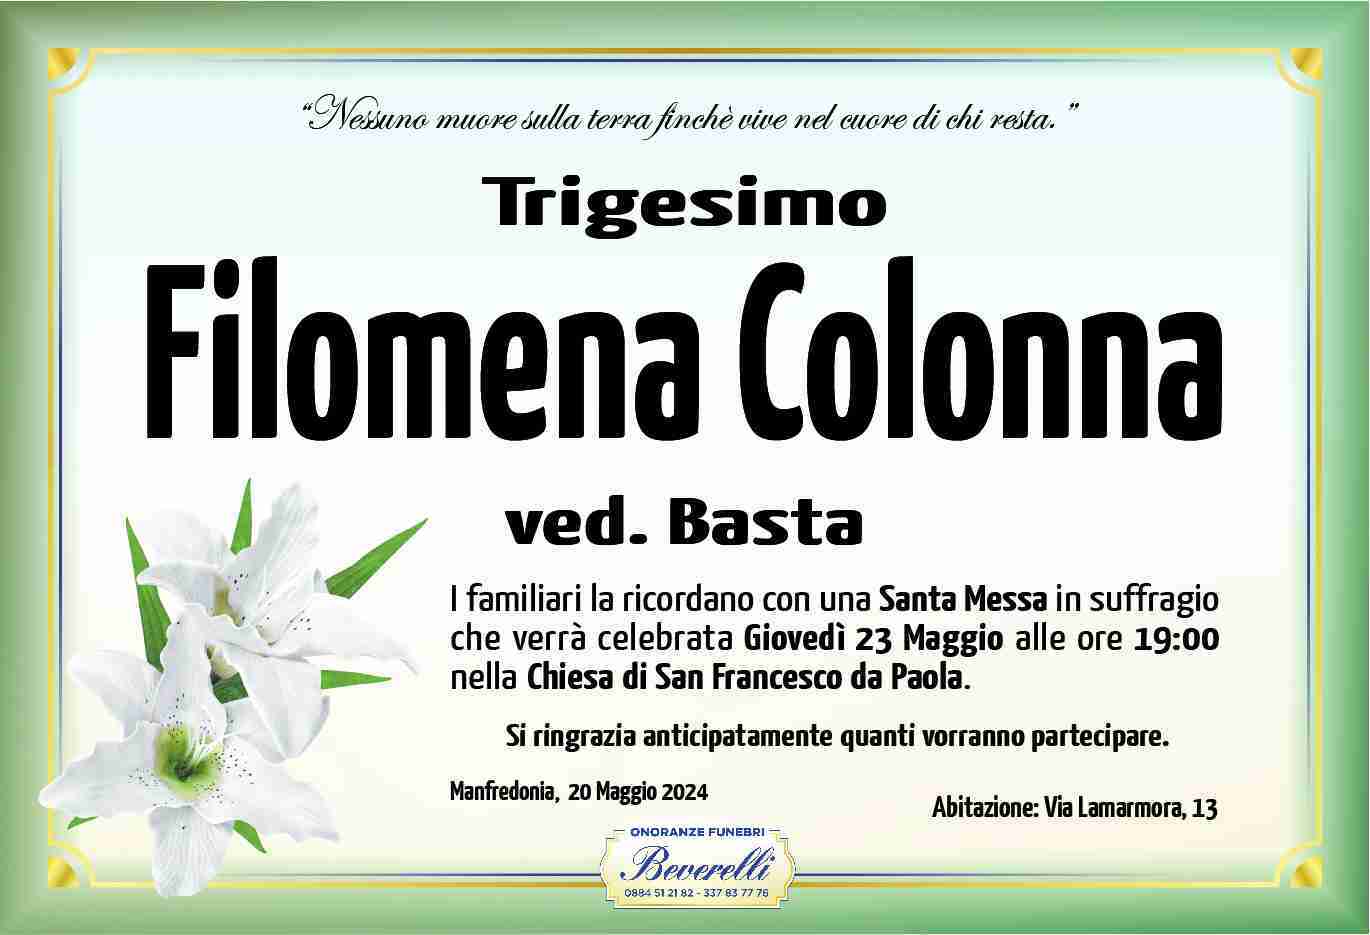 Filomena Colonna